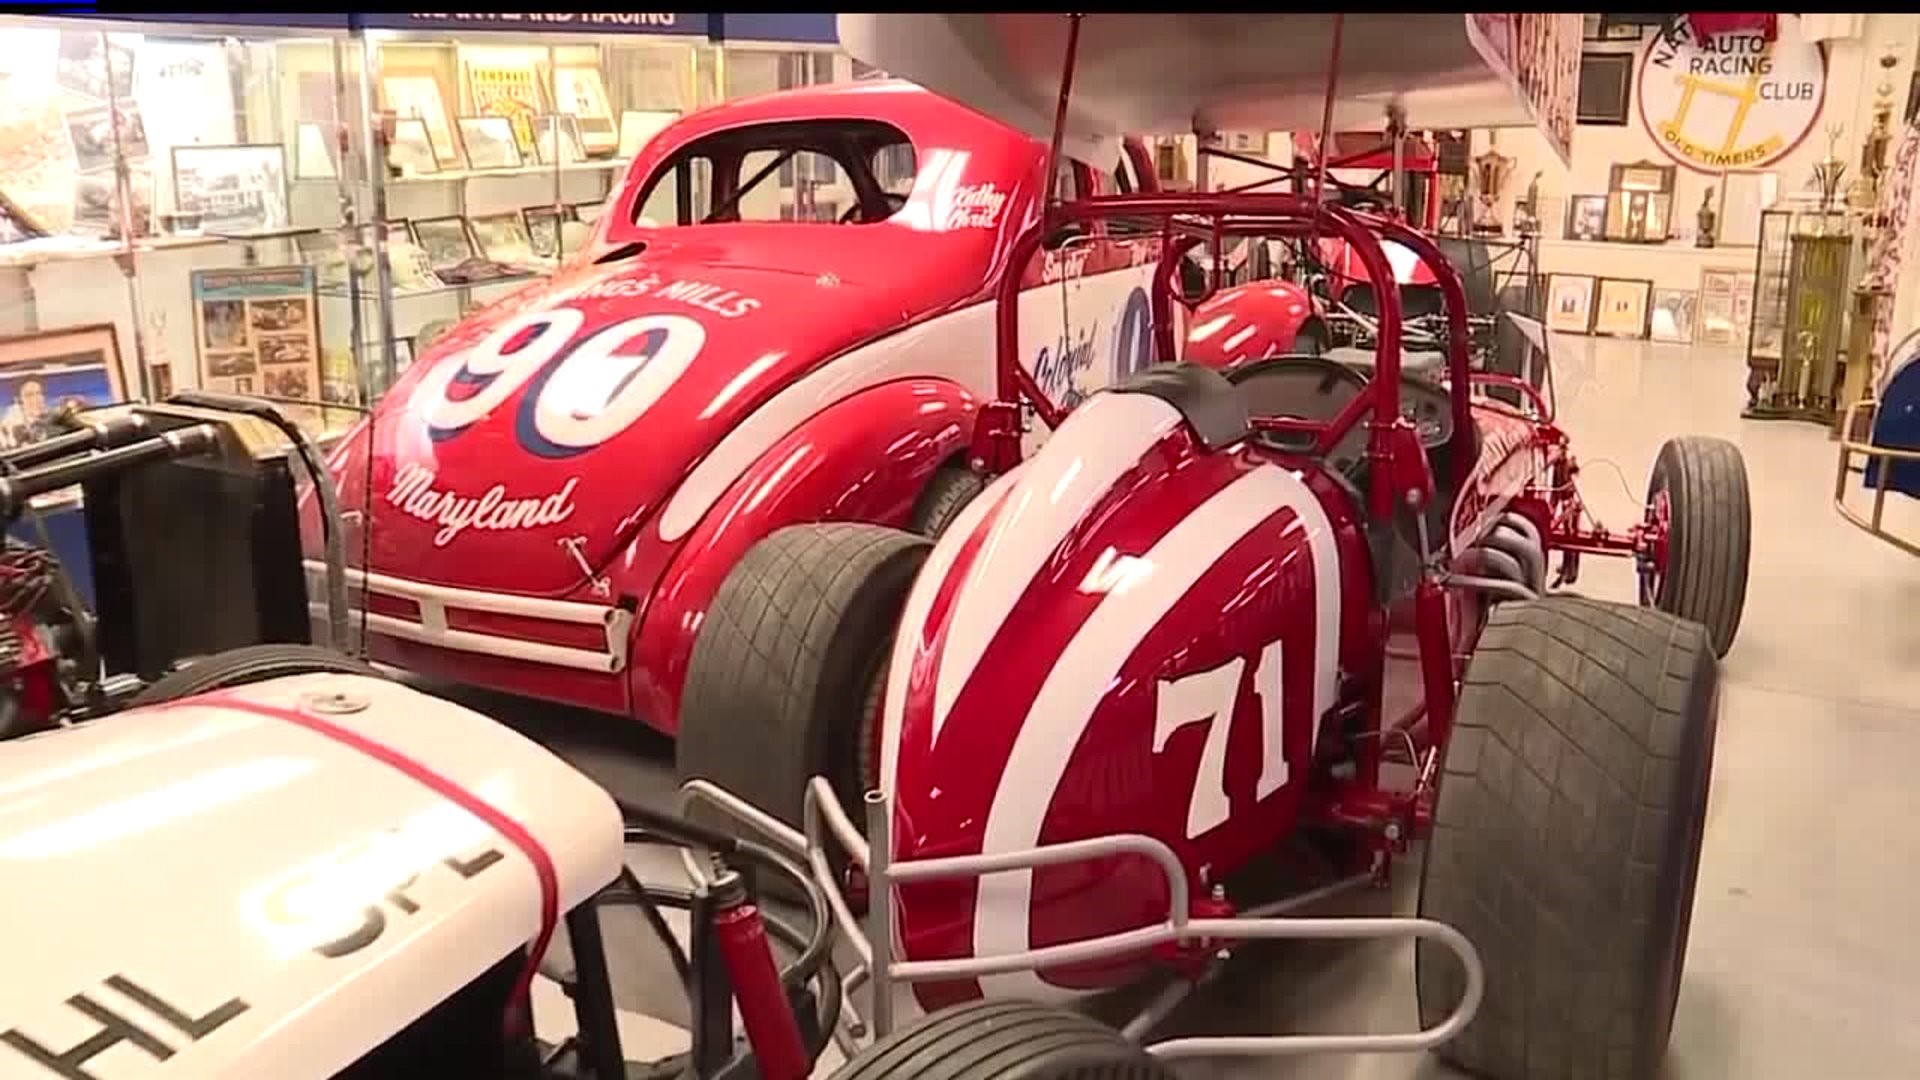 The Eastern Museum of Motor Racing is celebrating 60 years of racing this weekend